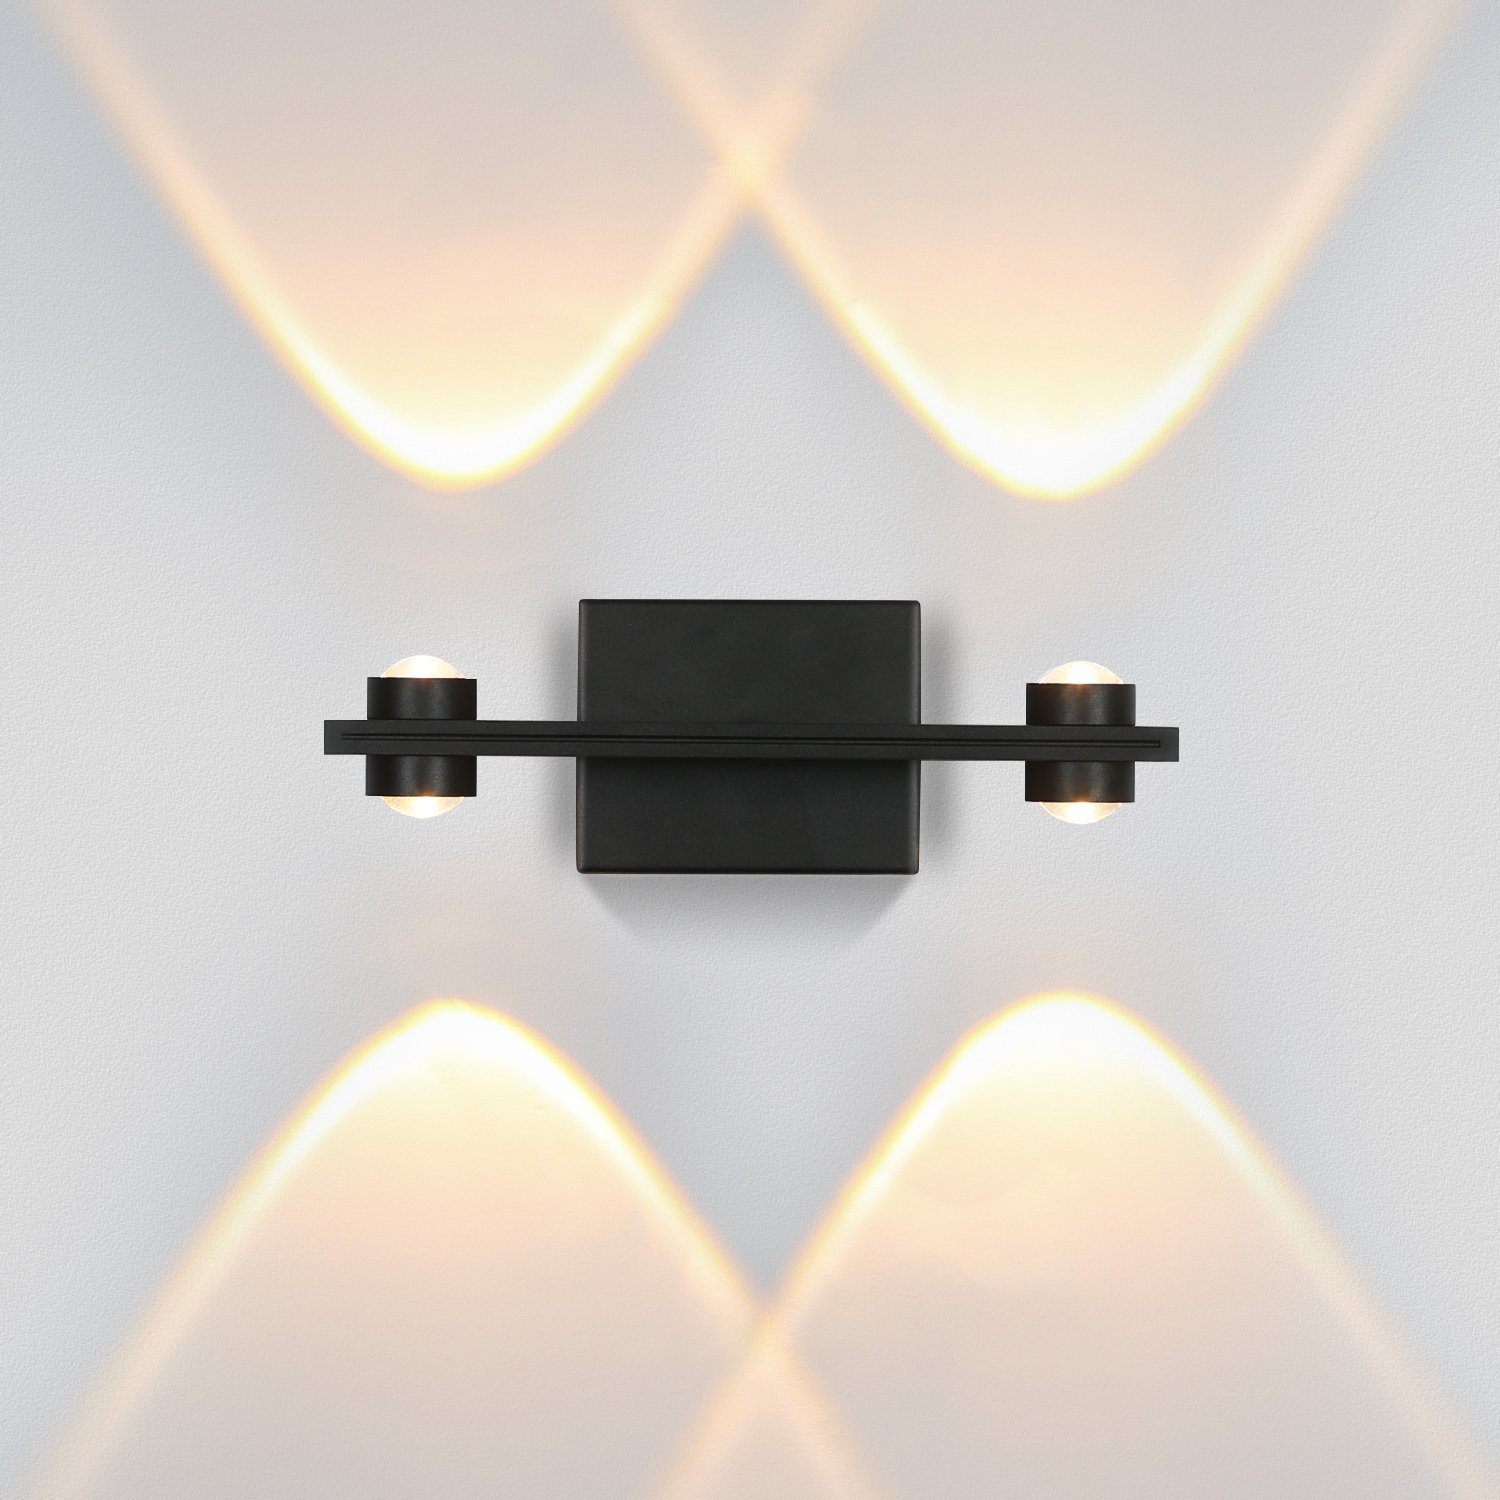 ZMH LED Wandleuchte innen Wandlampe Modern Wohnzimmer Wandbeleuchtung 3000K, Warmweiss Schwarz